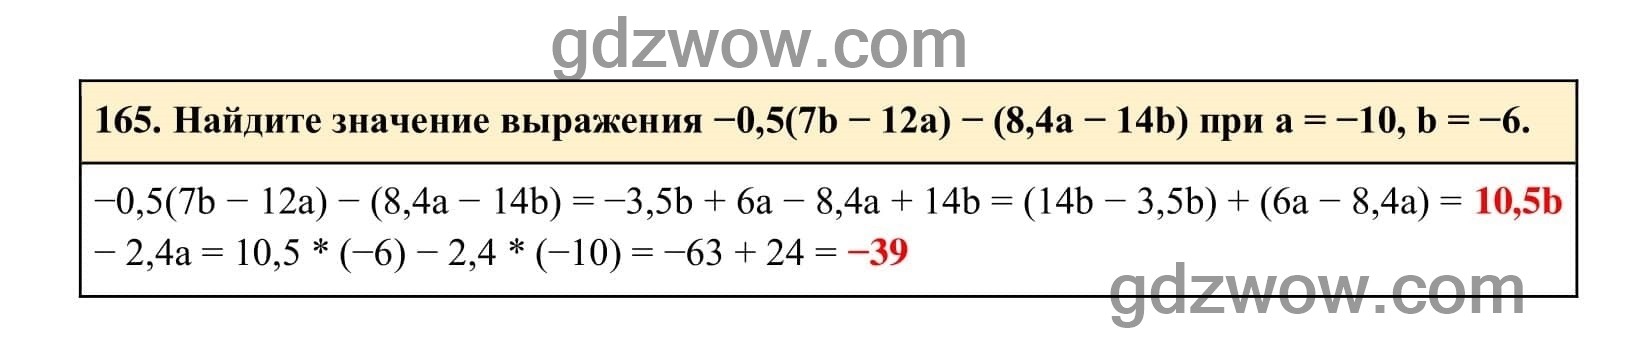 Упражнение 165 - ГДЗ по Алгебре 7 класс Учебник Макарычев (решебник) - GDZwow